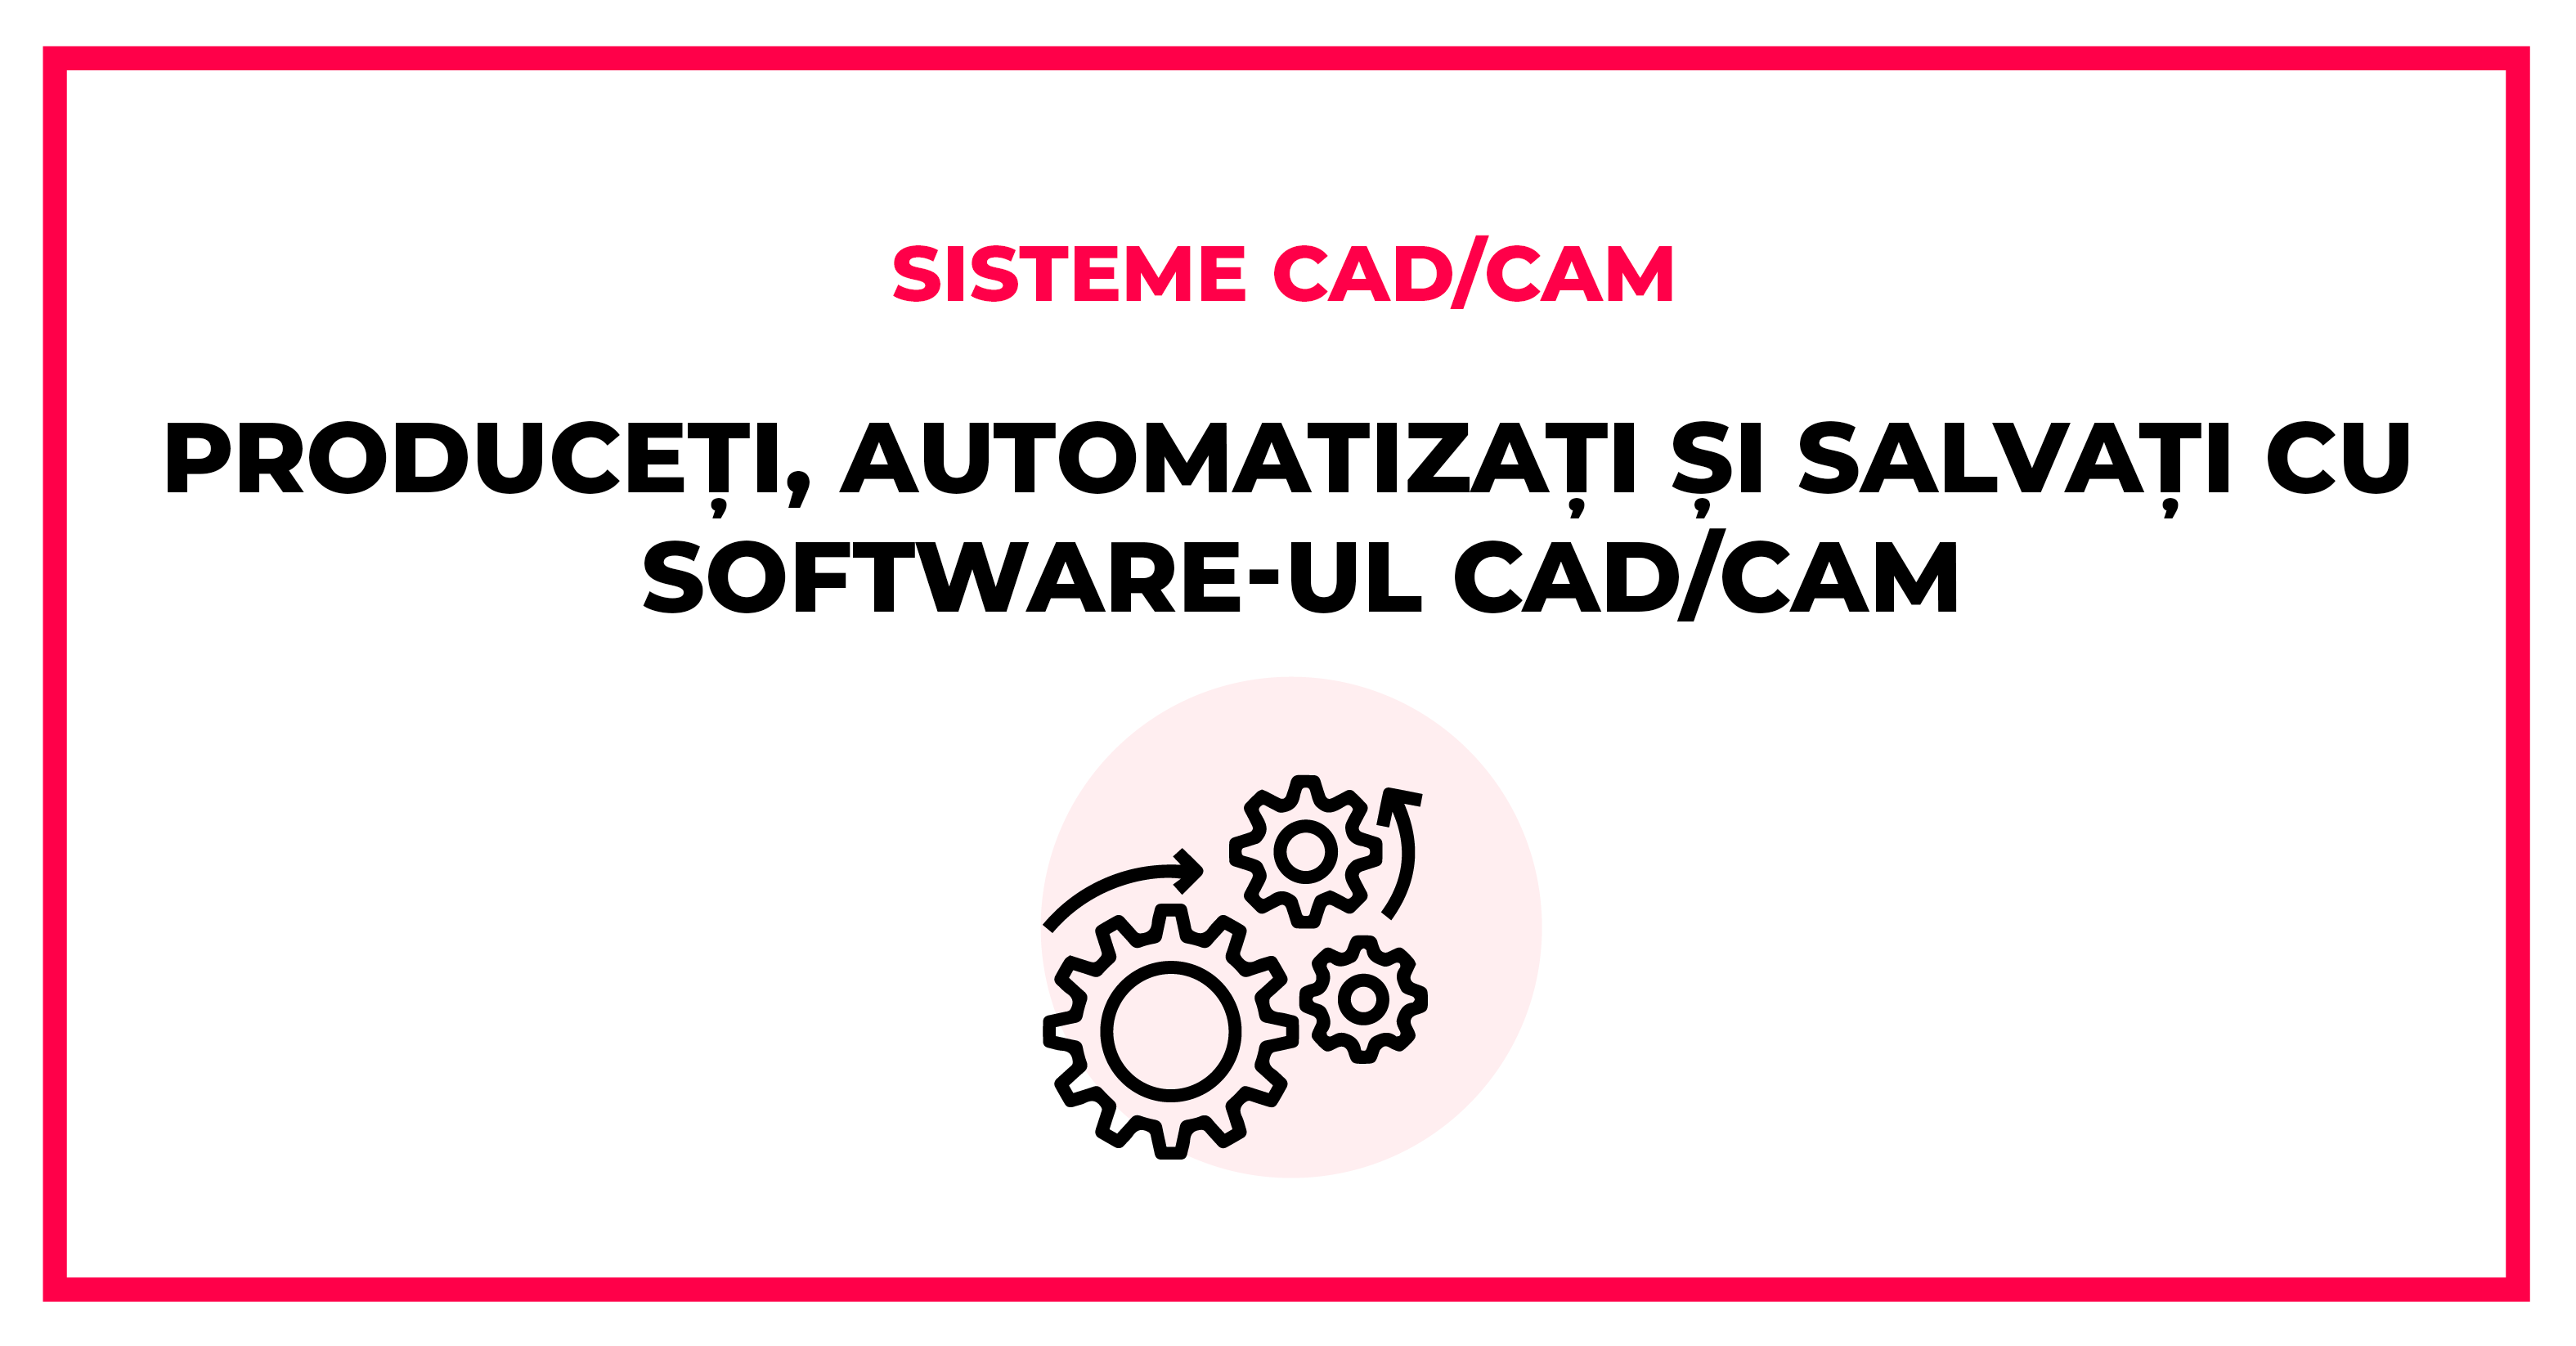 Produceți, automatizați și salvați cu software-ul CAD/CAM